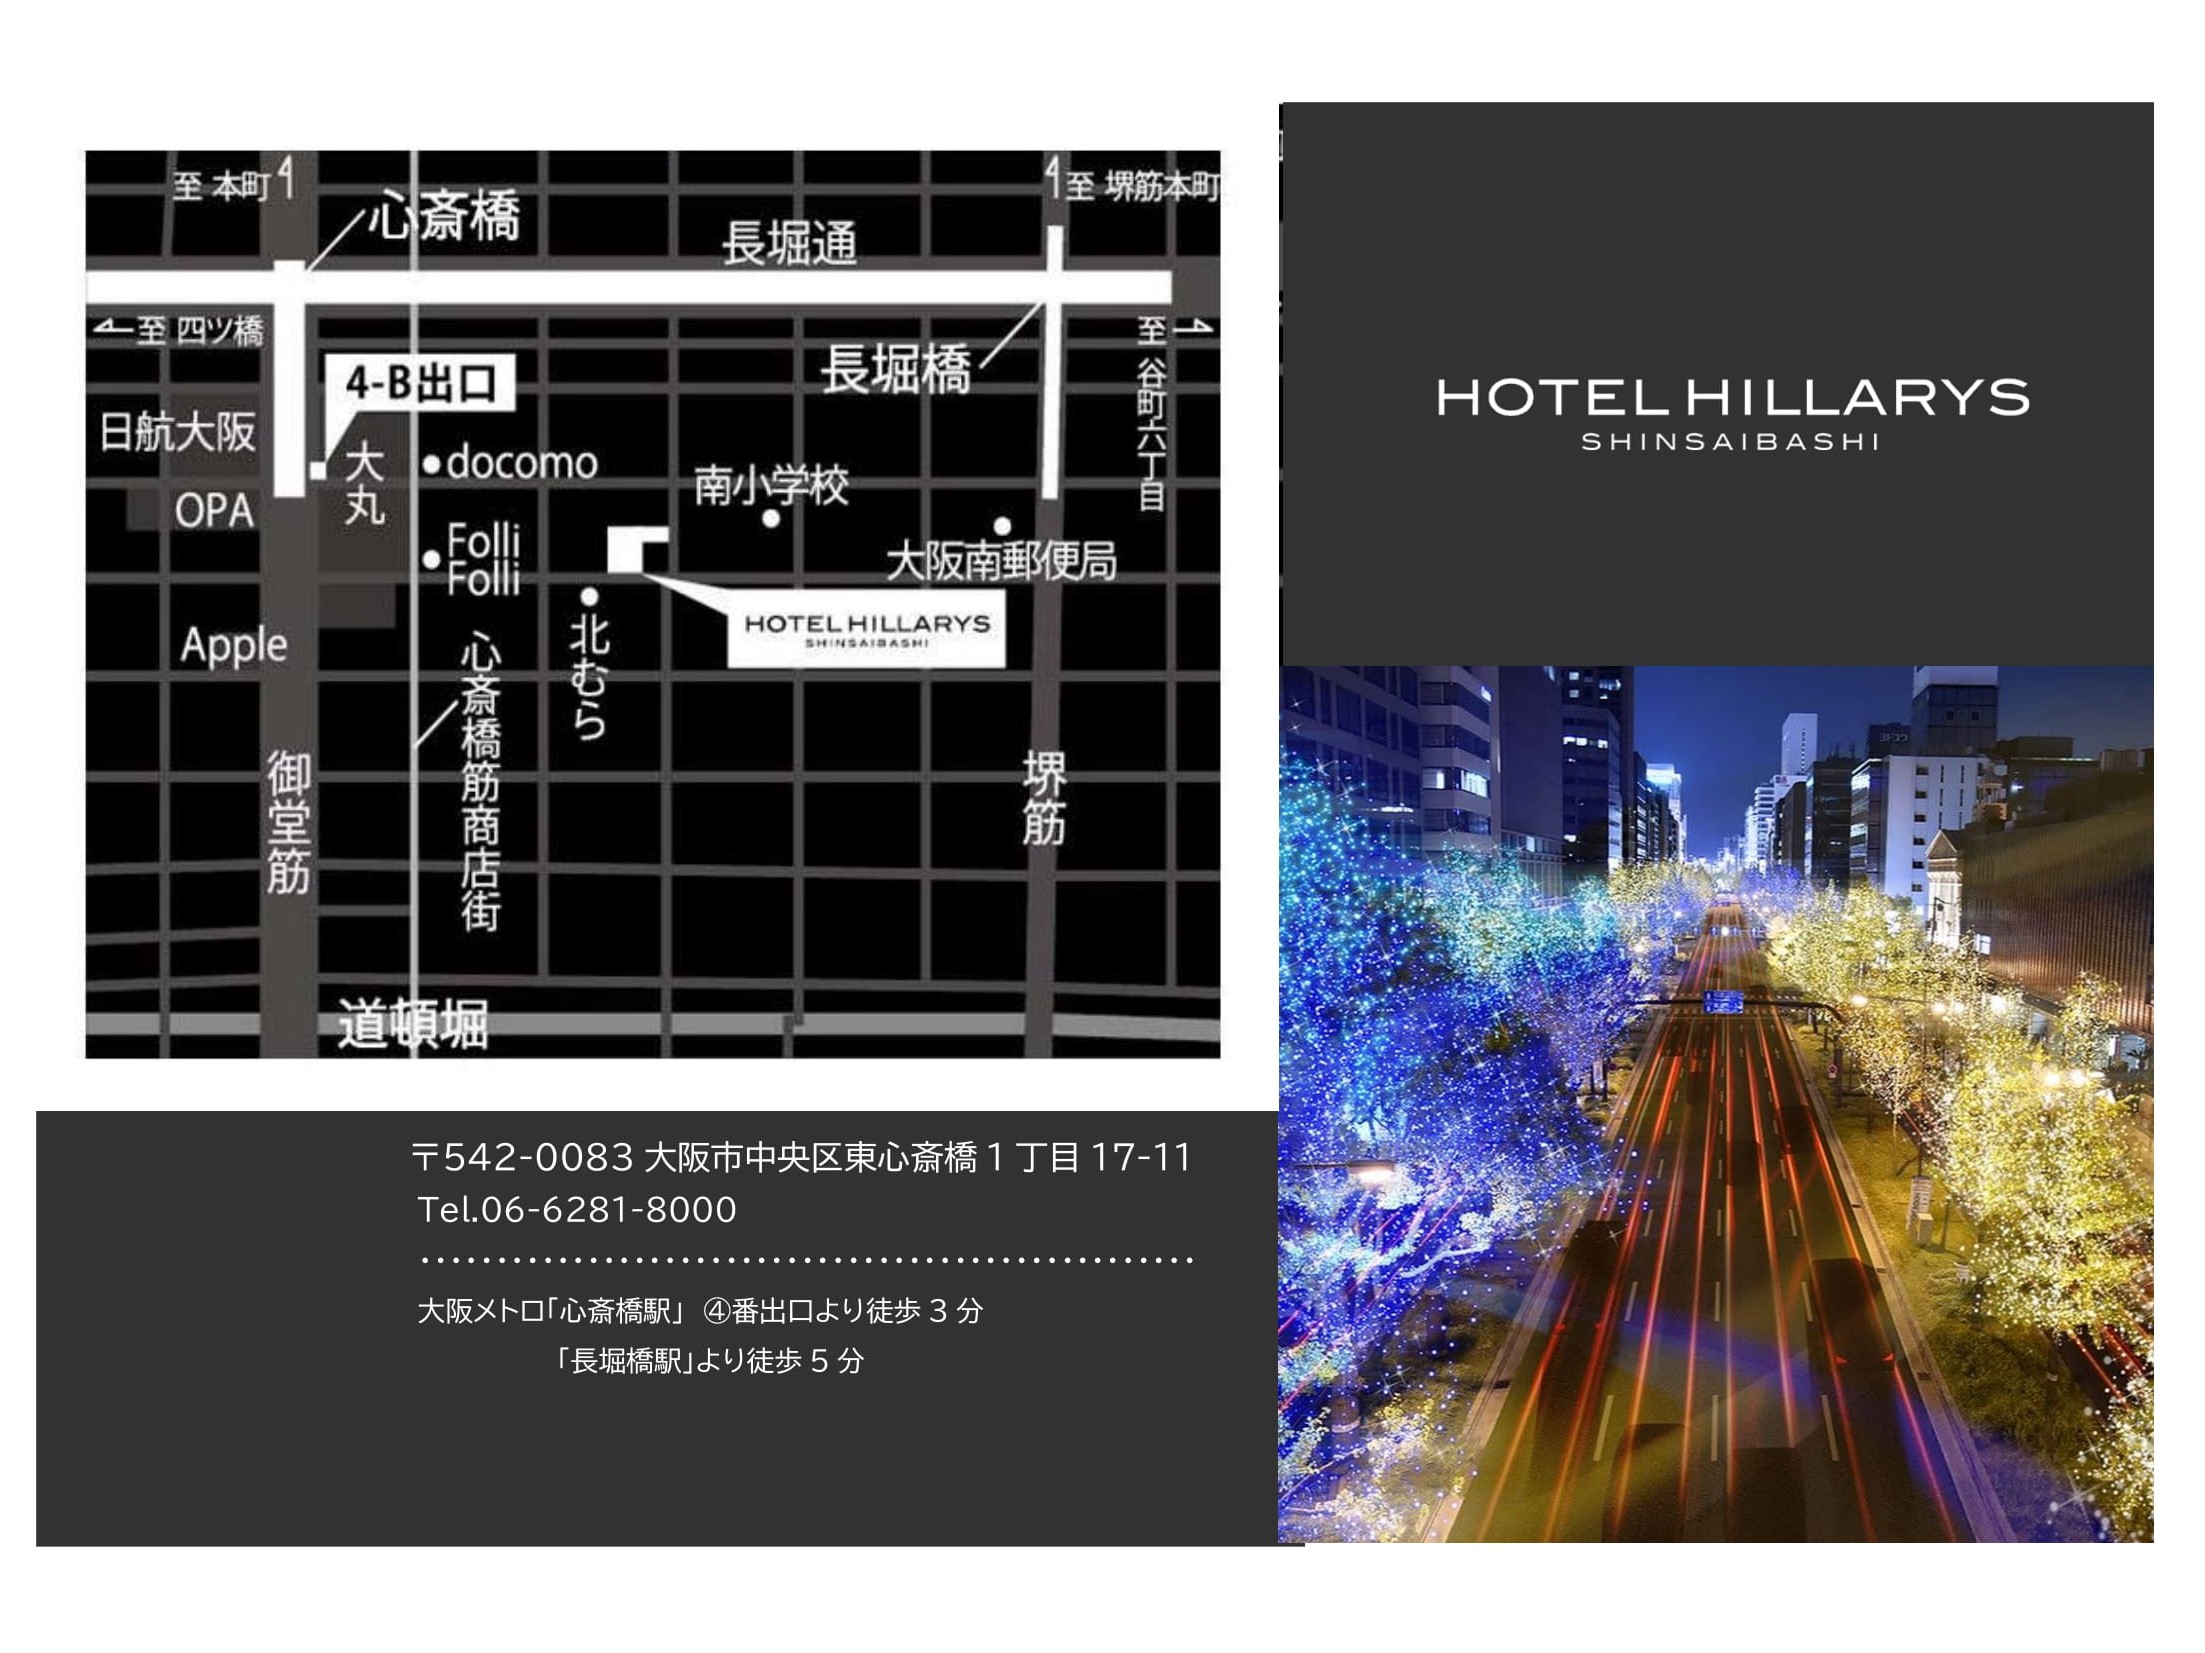 Hotel Hillarys Shinsaibashi